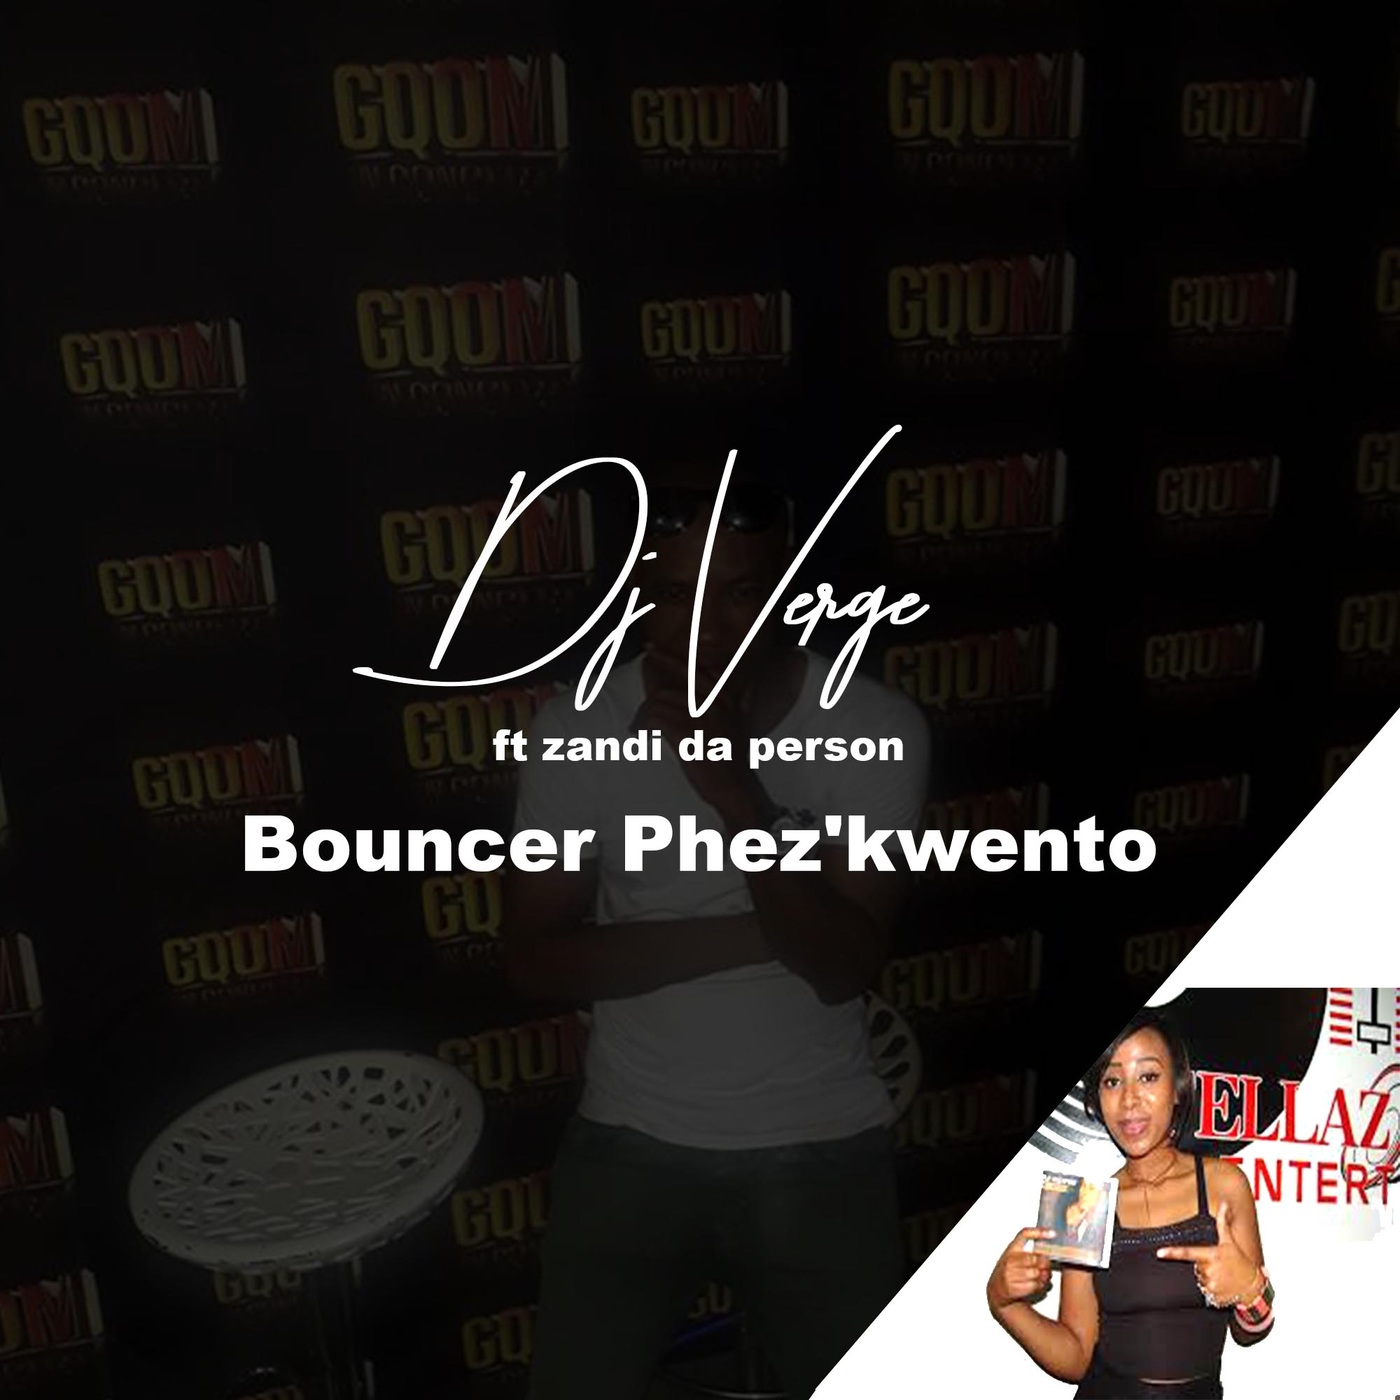 Dj Verge feat. Zandi Da Person - Bounce Phez'kwayo / Phushi Plan music